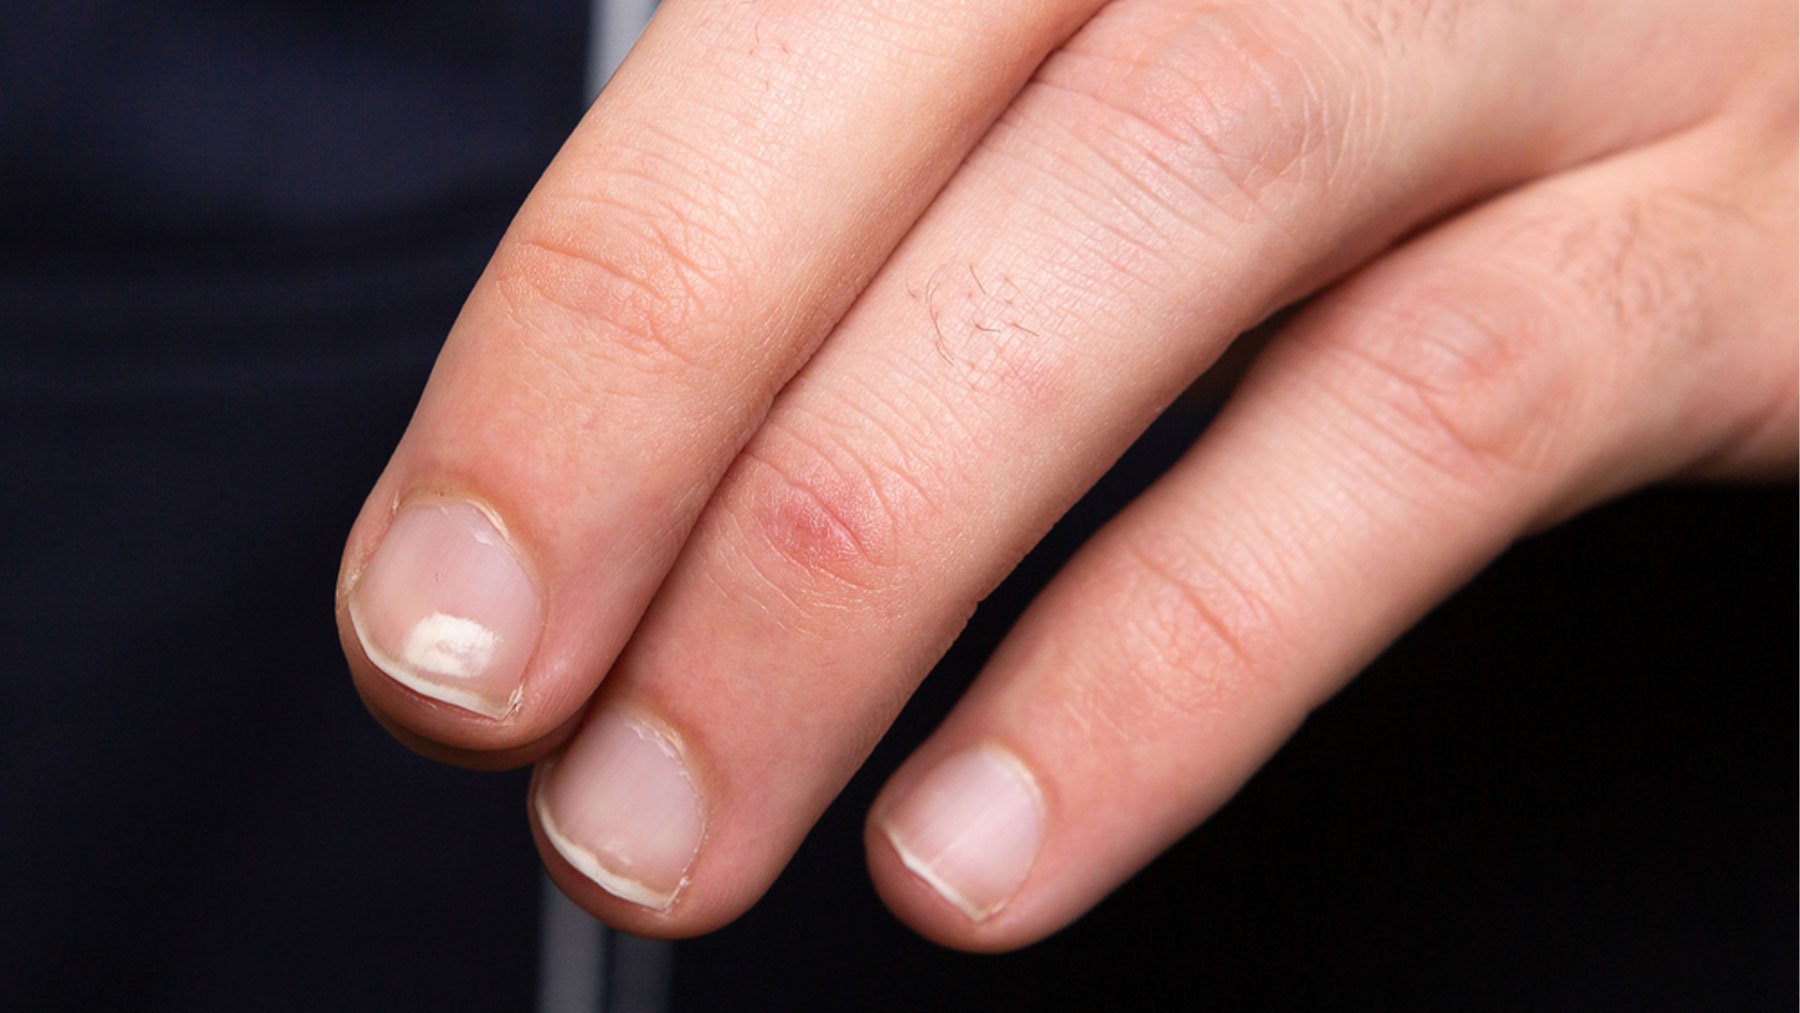 Unas uñas saludables tienen que ser lisas, sin marcas y de color rosado.